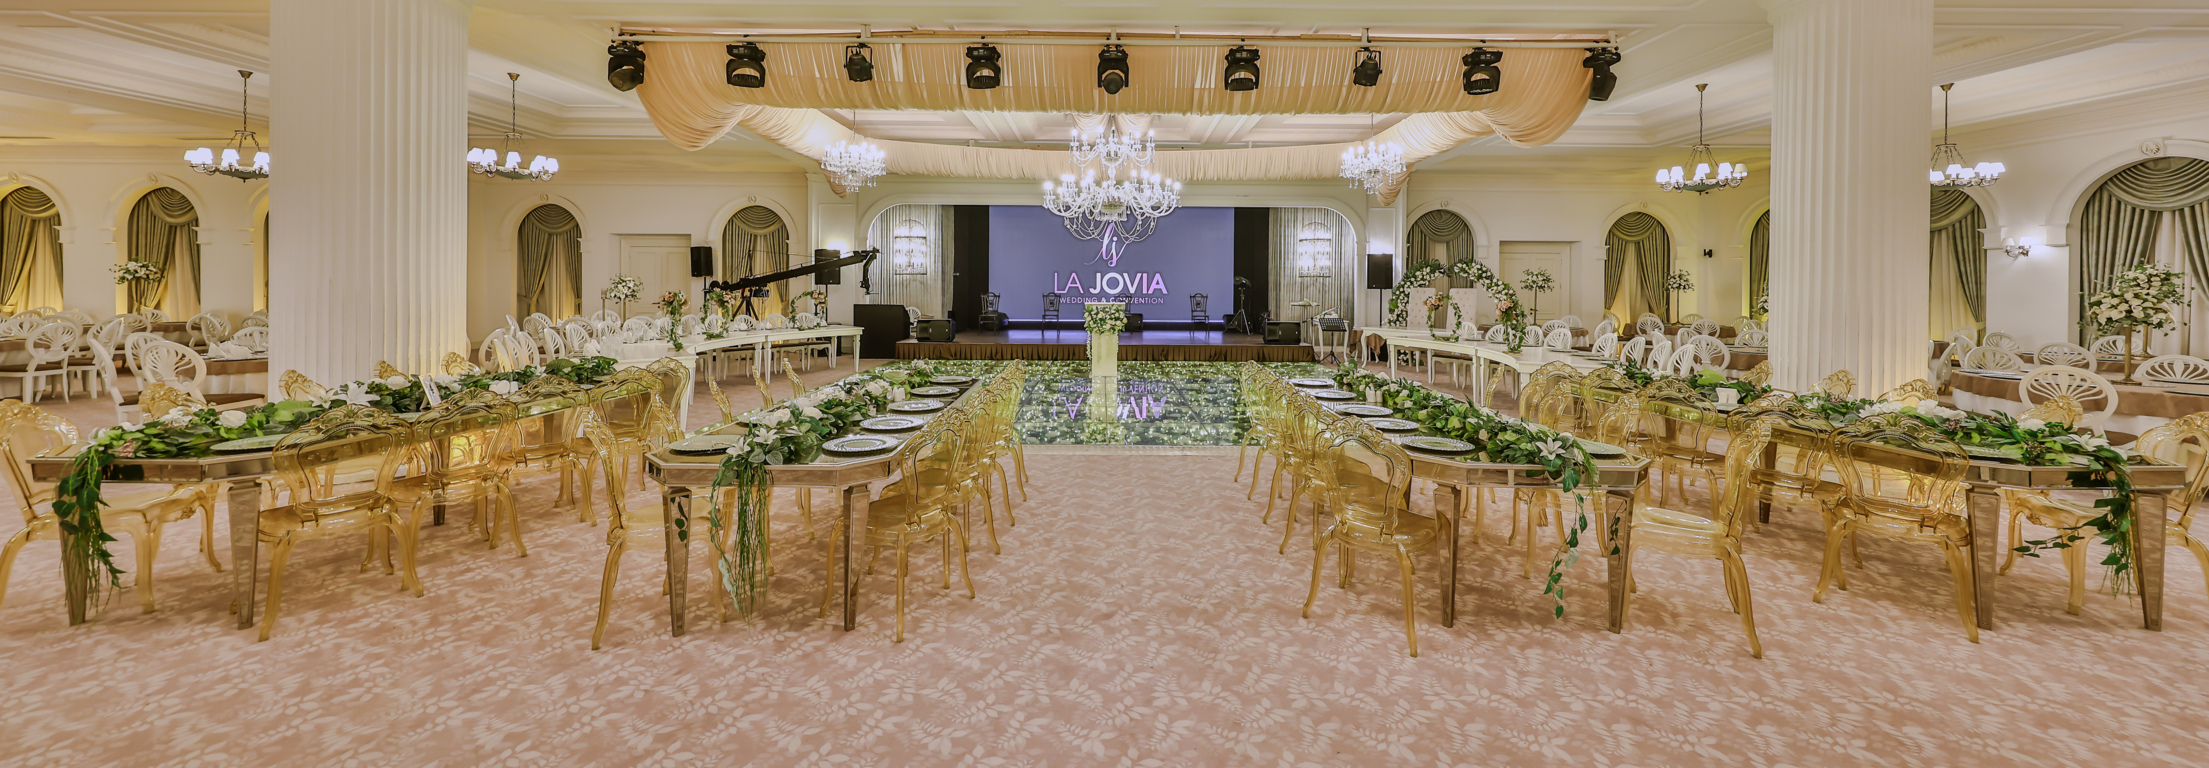 La Jovia Wedding & Convention